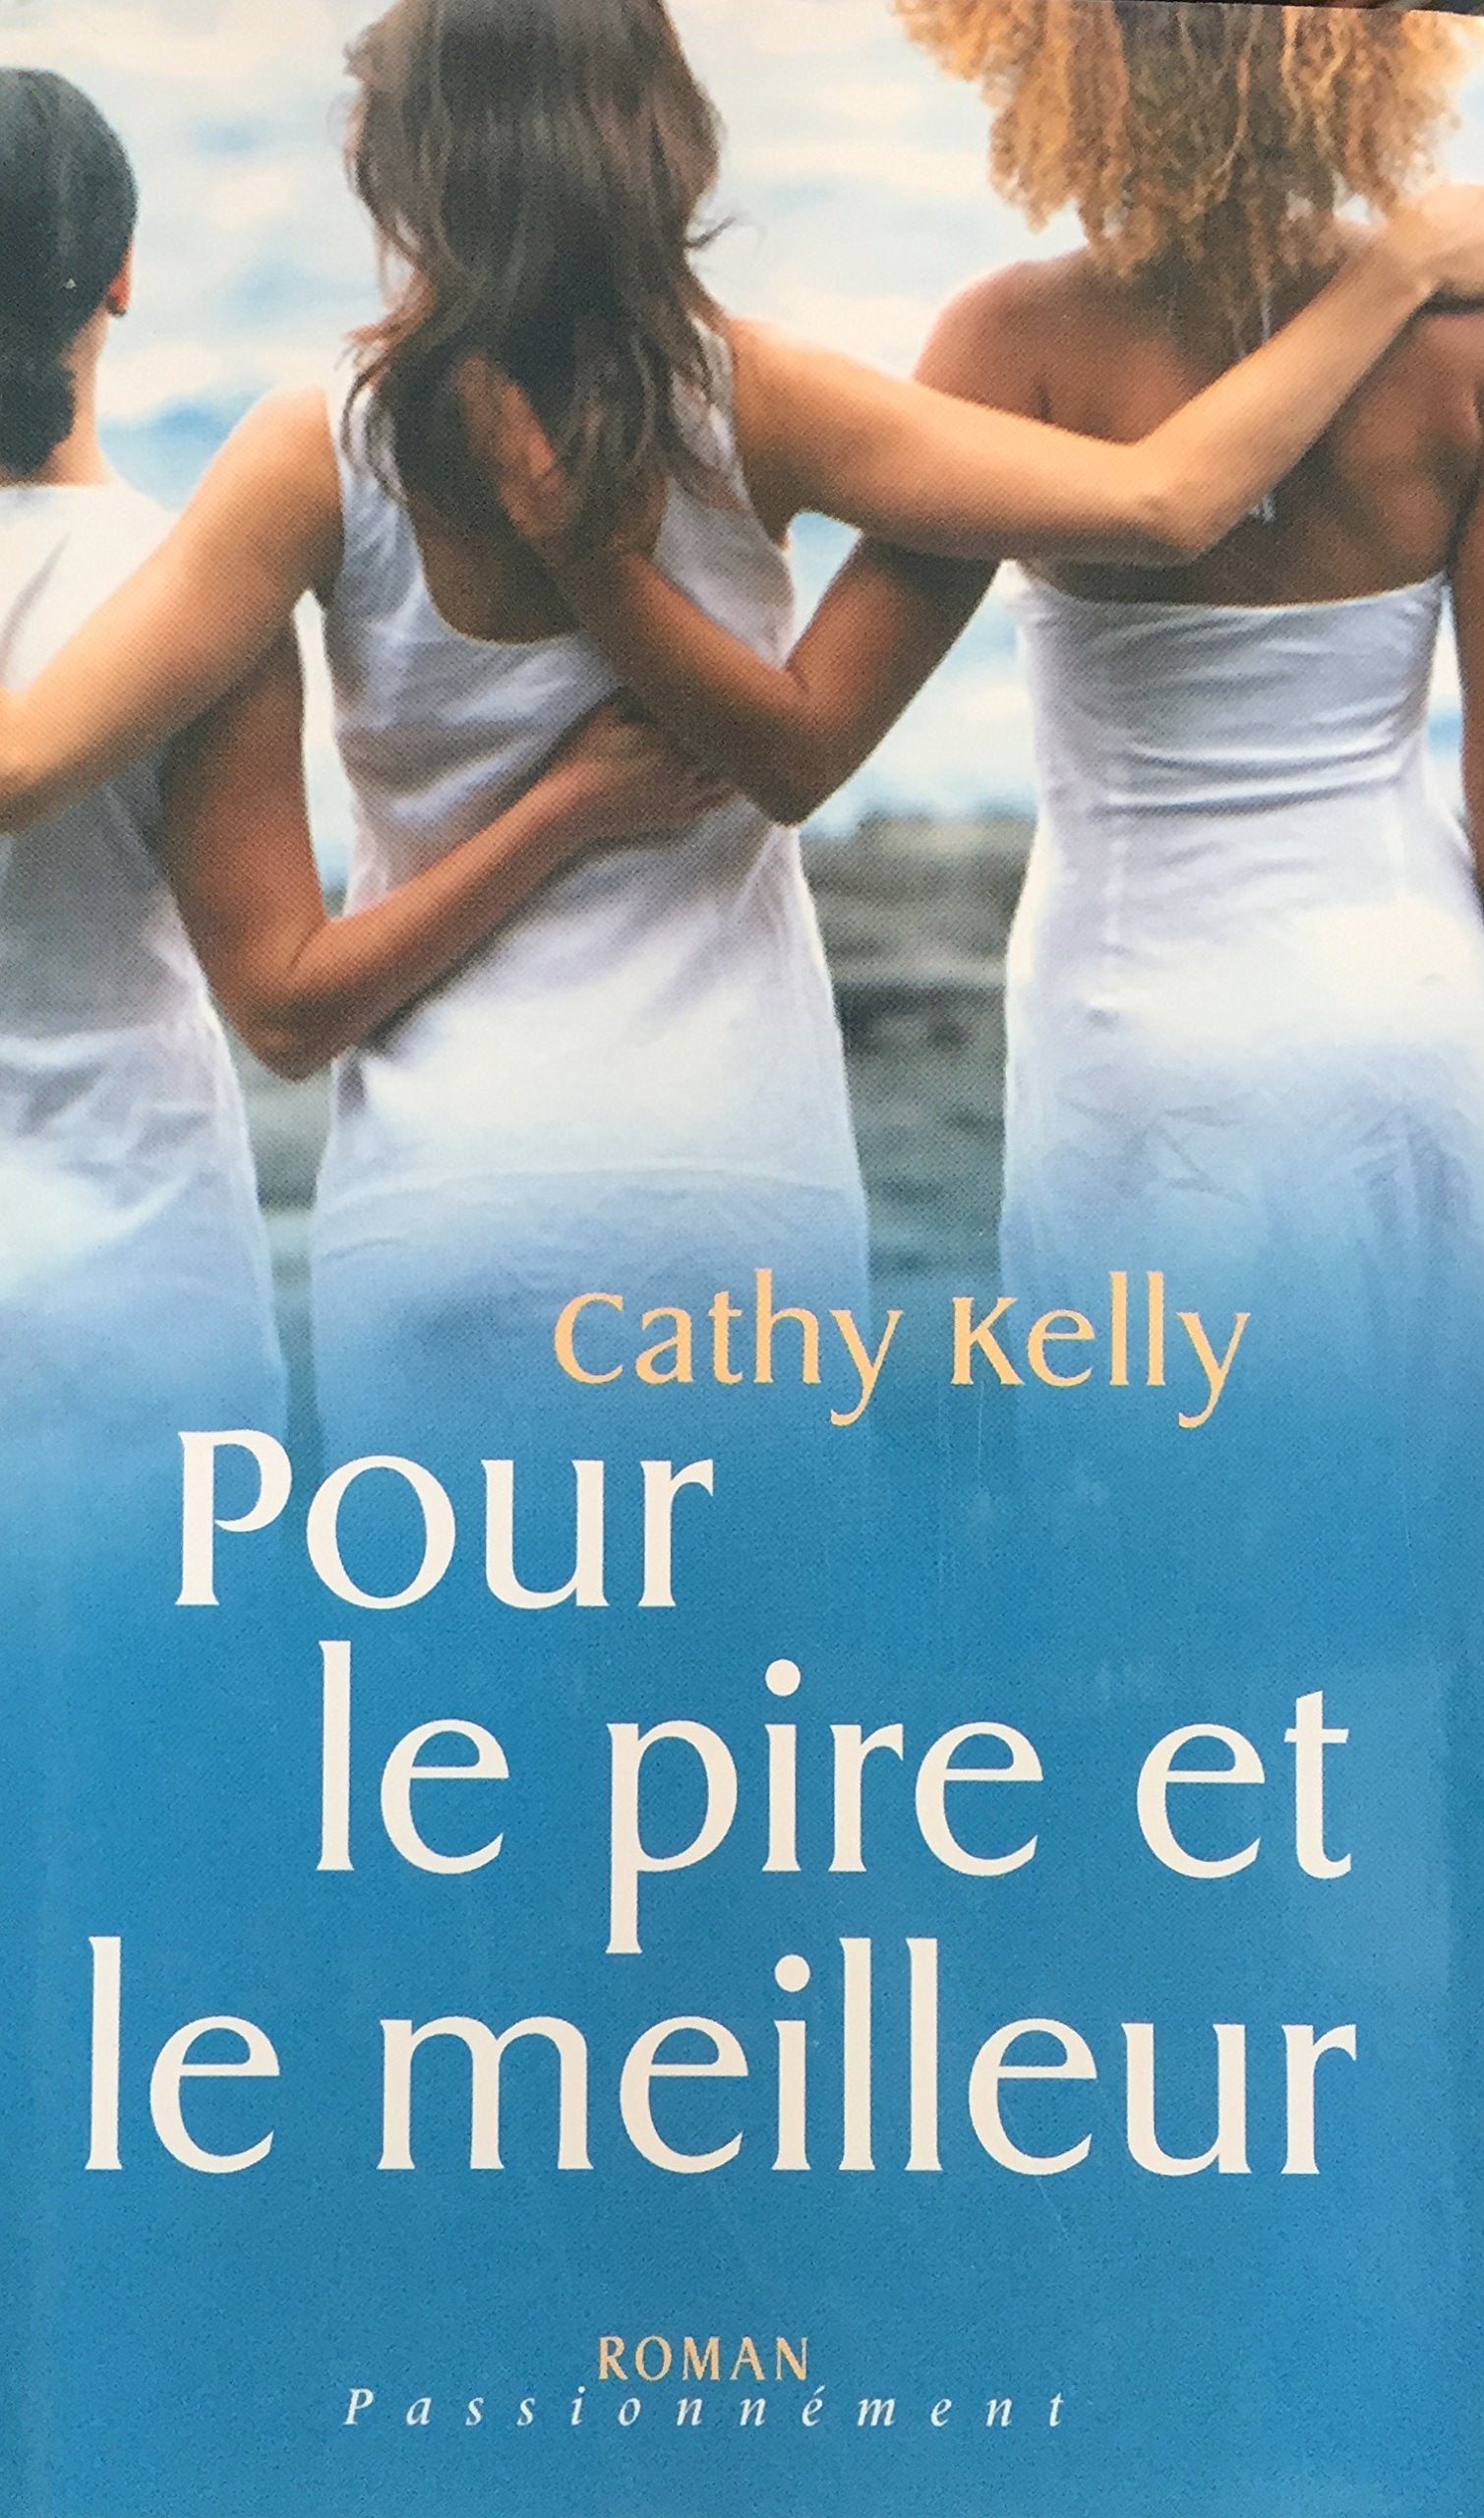 Livre ISBN 2298009546 Roman Passionnément : Pour le pire et le meilleur (Cathy Kelly)